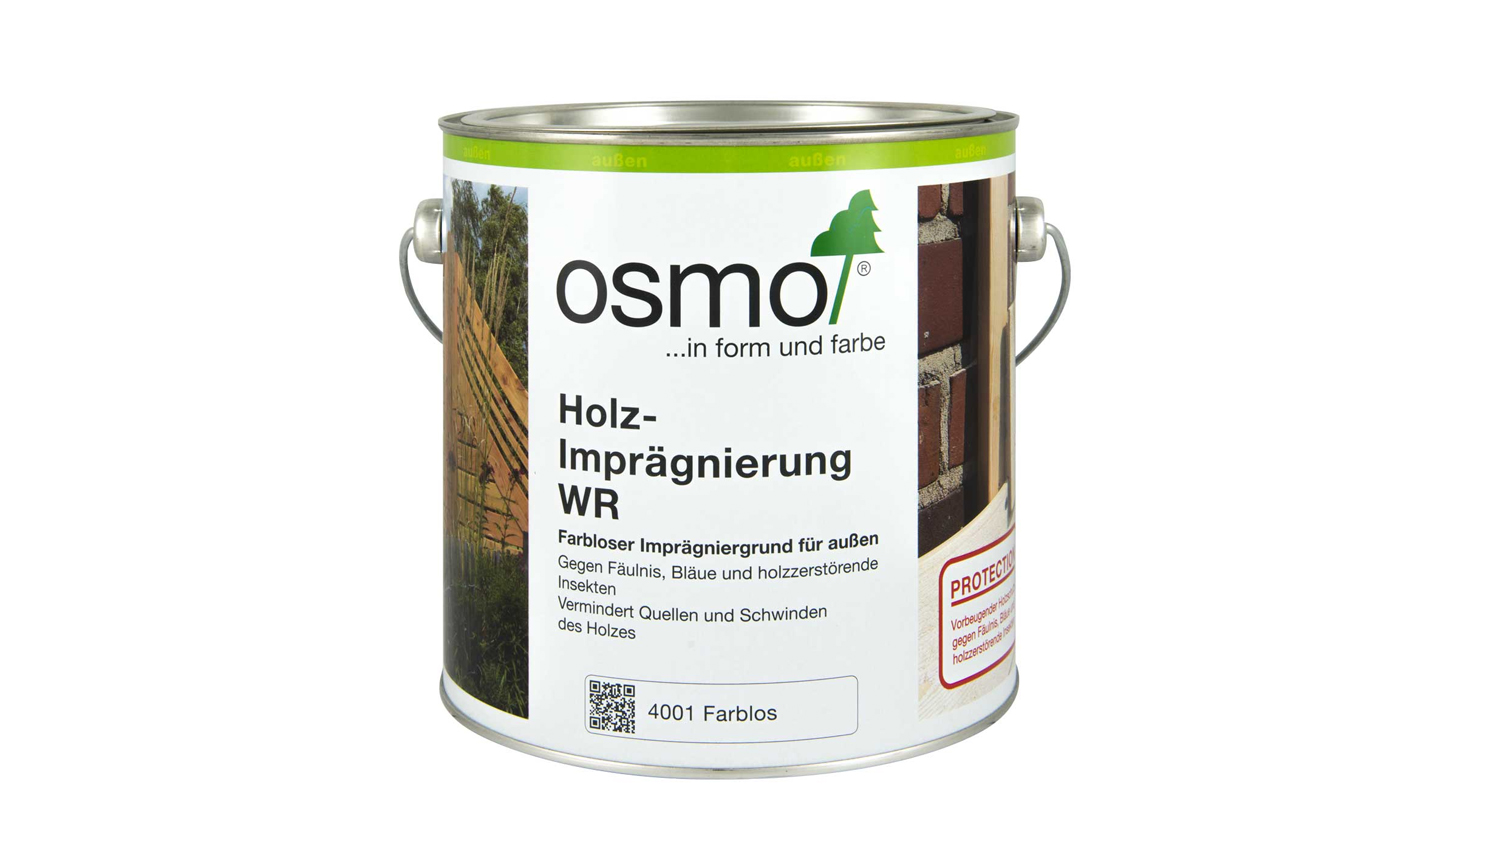 Osmo Holz-Imprägnierung WR farblos 2,5l